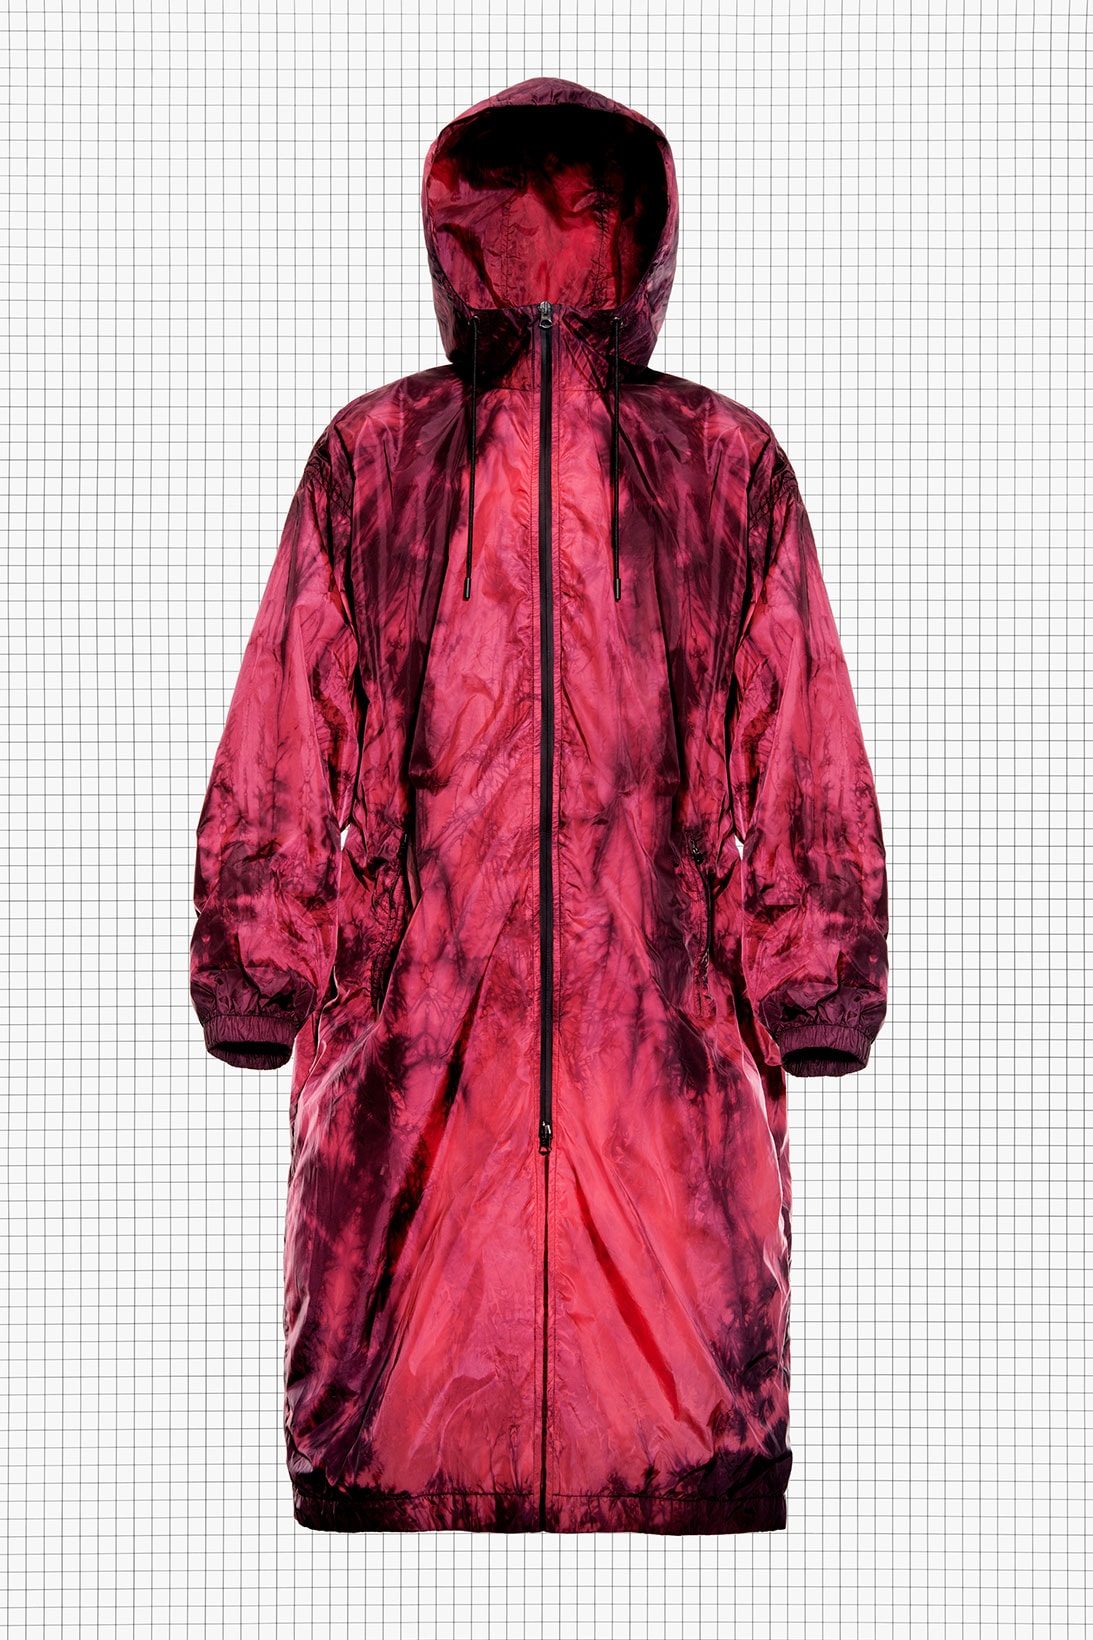 acne studios repurposed drop 3 hiking tie-dye parka jacket coat hood